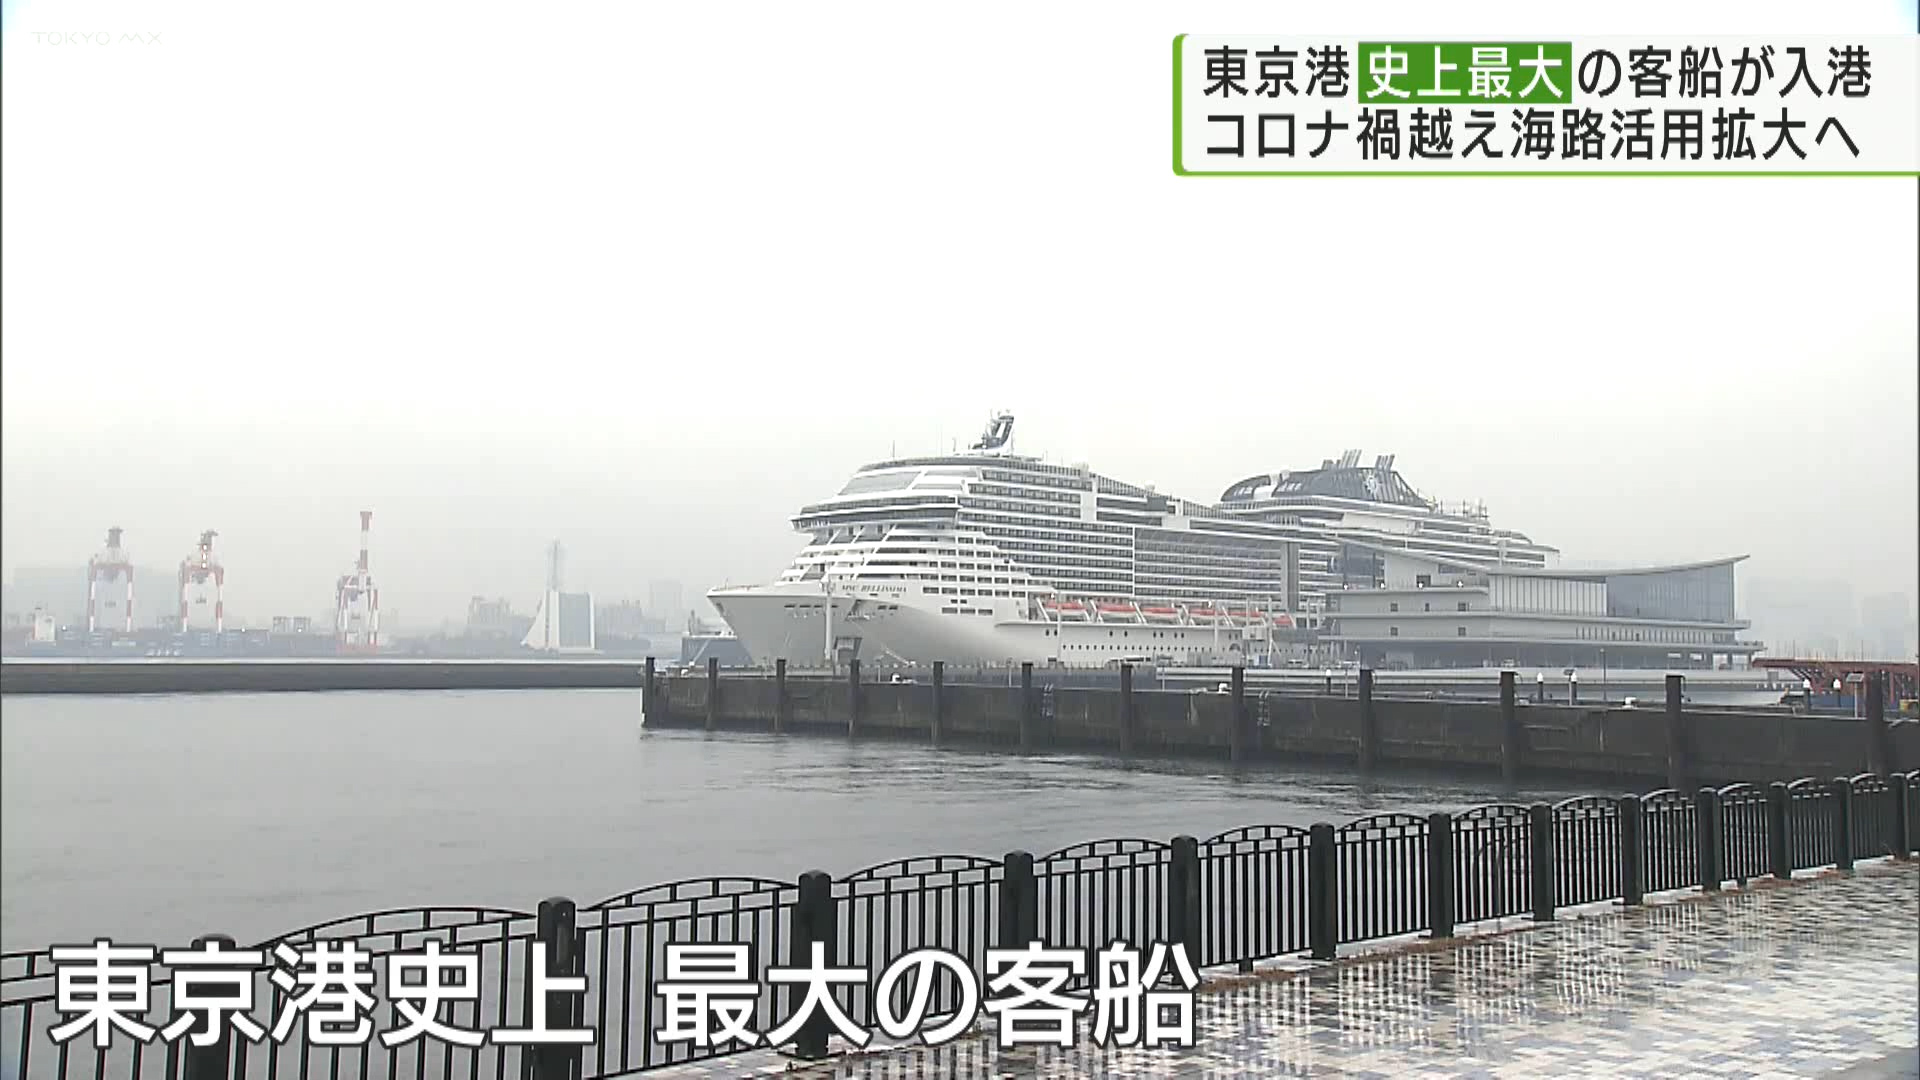 東京港史上最大のクルーズ客船が初入港　コロナ禍越え海路活用拡大へ